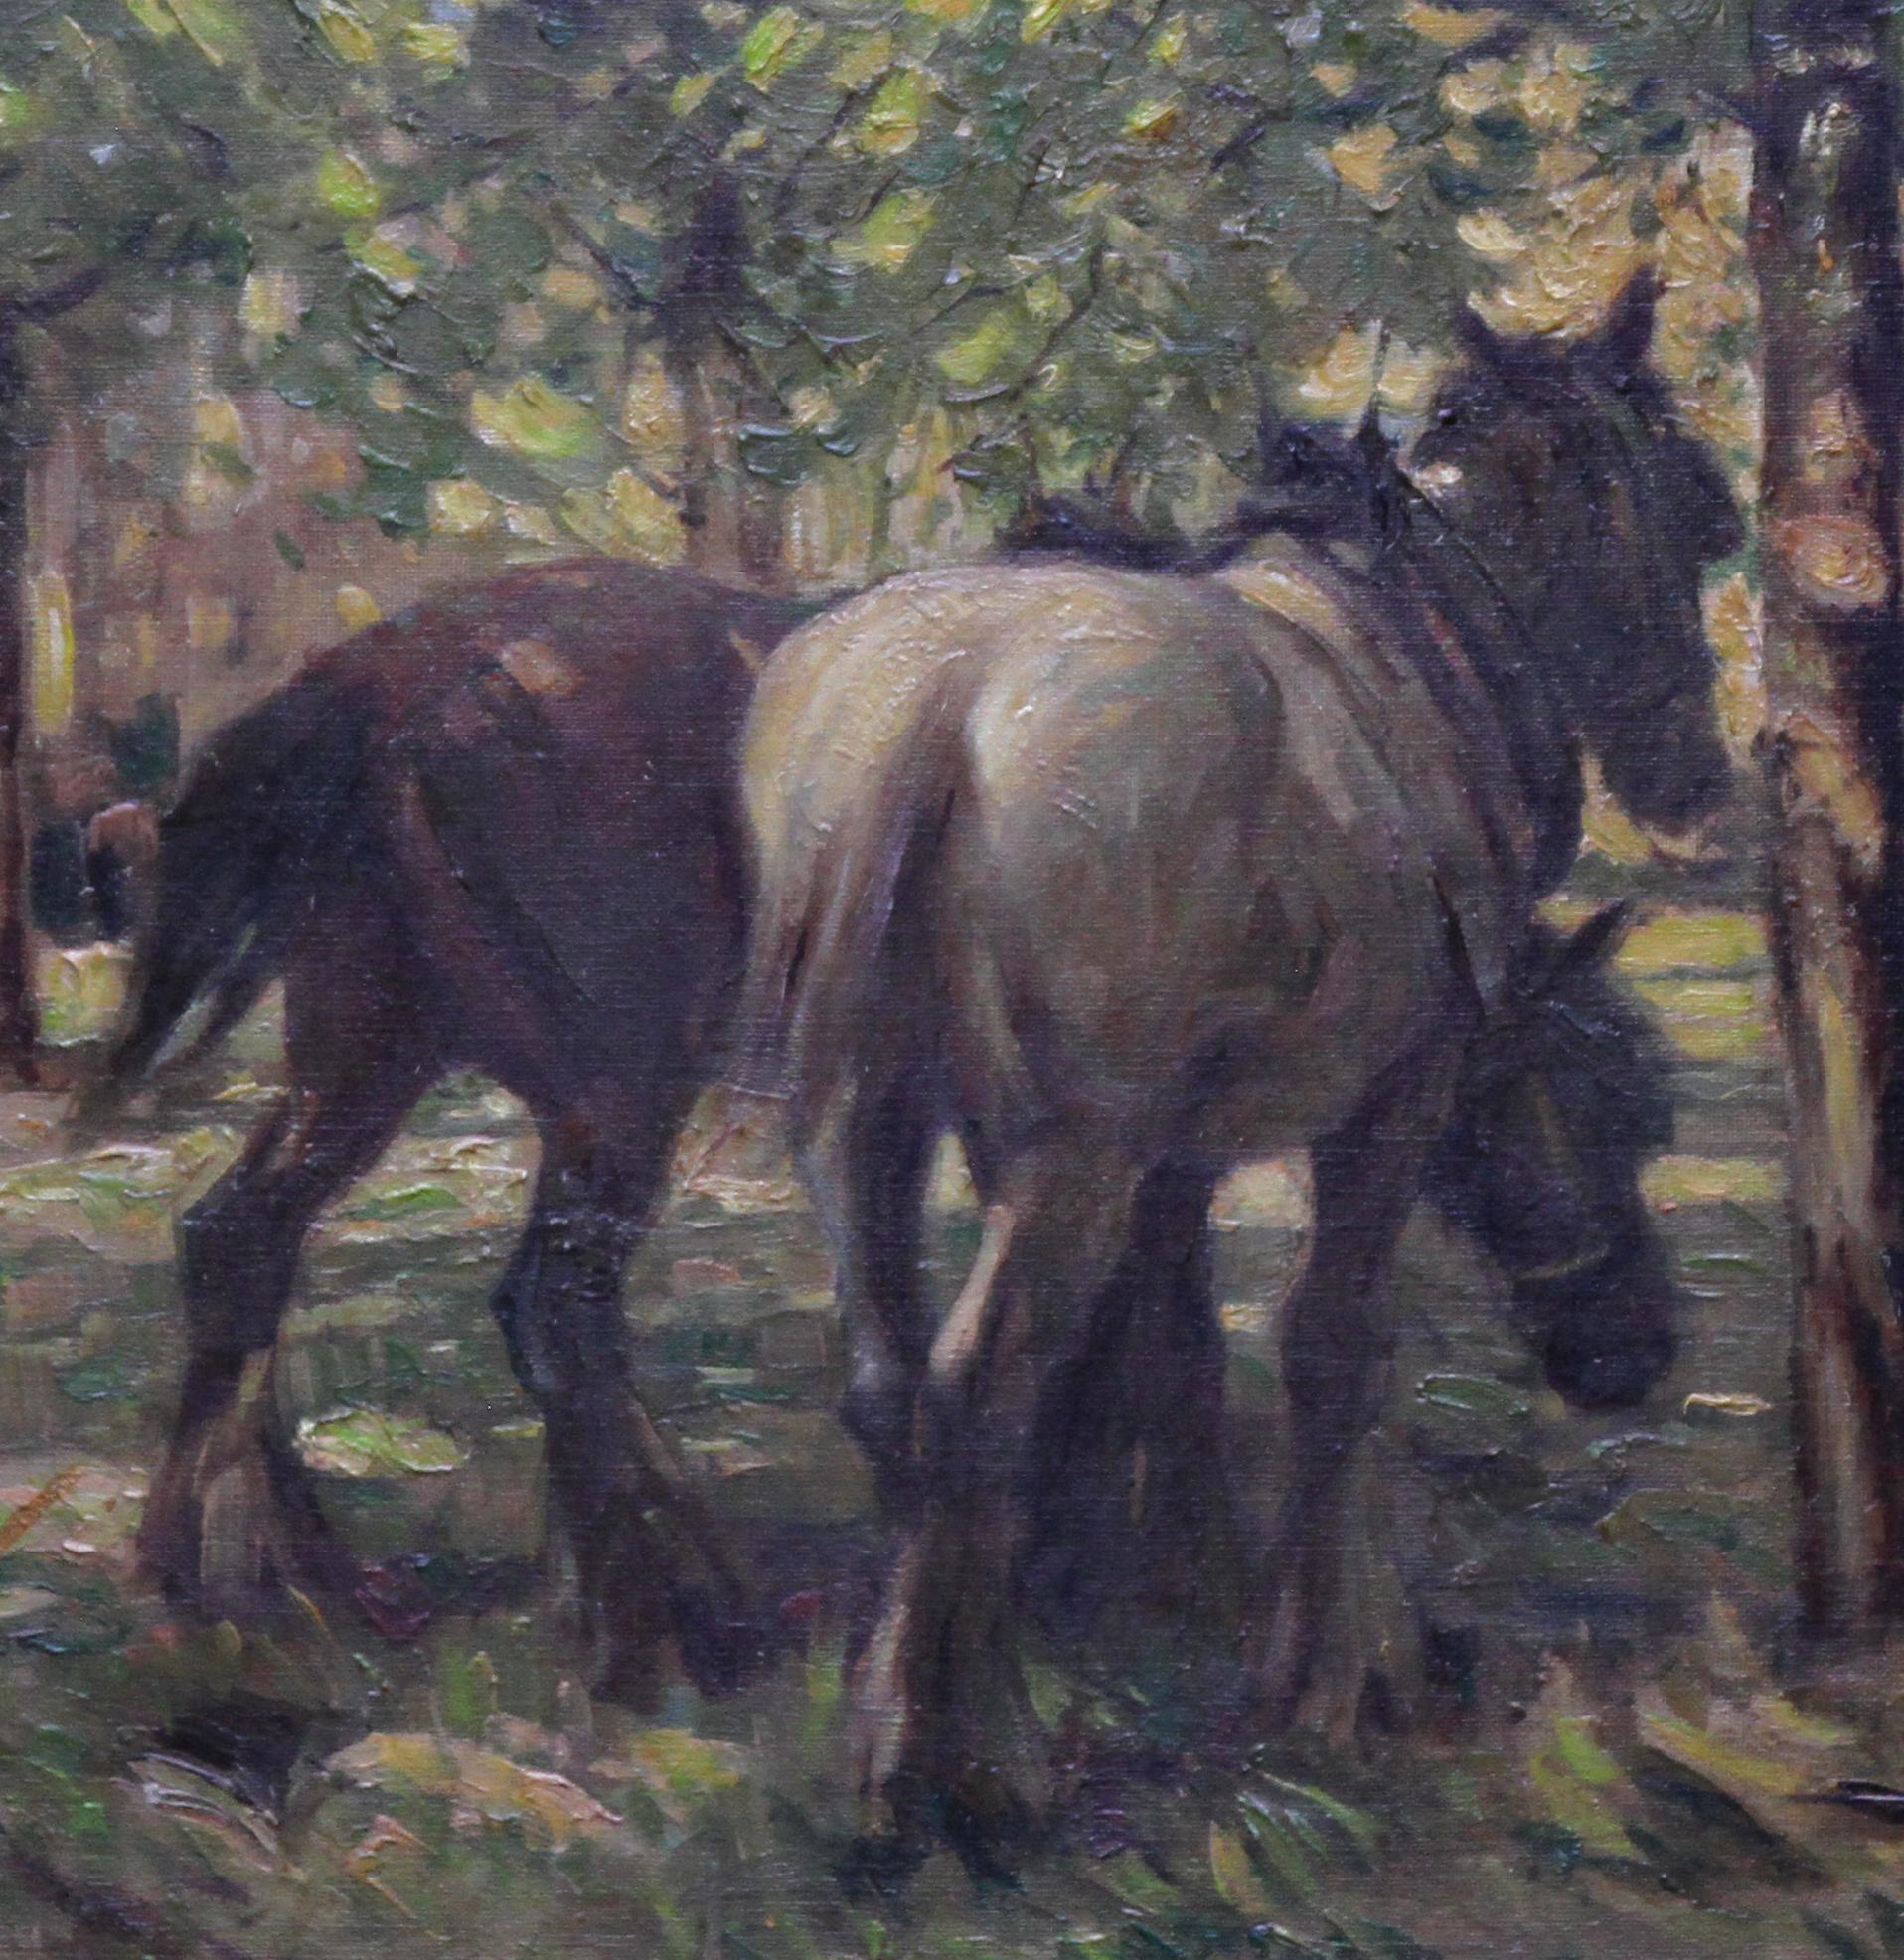 Cette magnifique peinture à l'huile impressionniste britannique est l'œuvre du célèbre artiste animalier Arthur Spooner. Peinte vers 1935, cette superbe peinture représente deux chevaux de trait à l'ombre d'arbres d'un vert éclatant. La lumière du